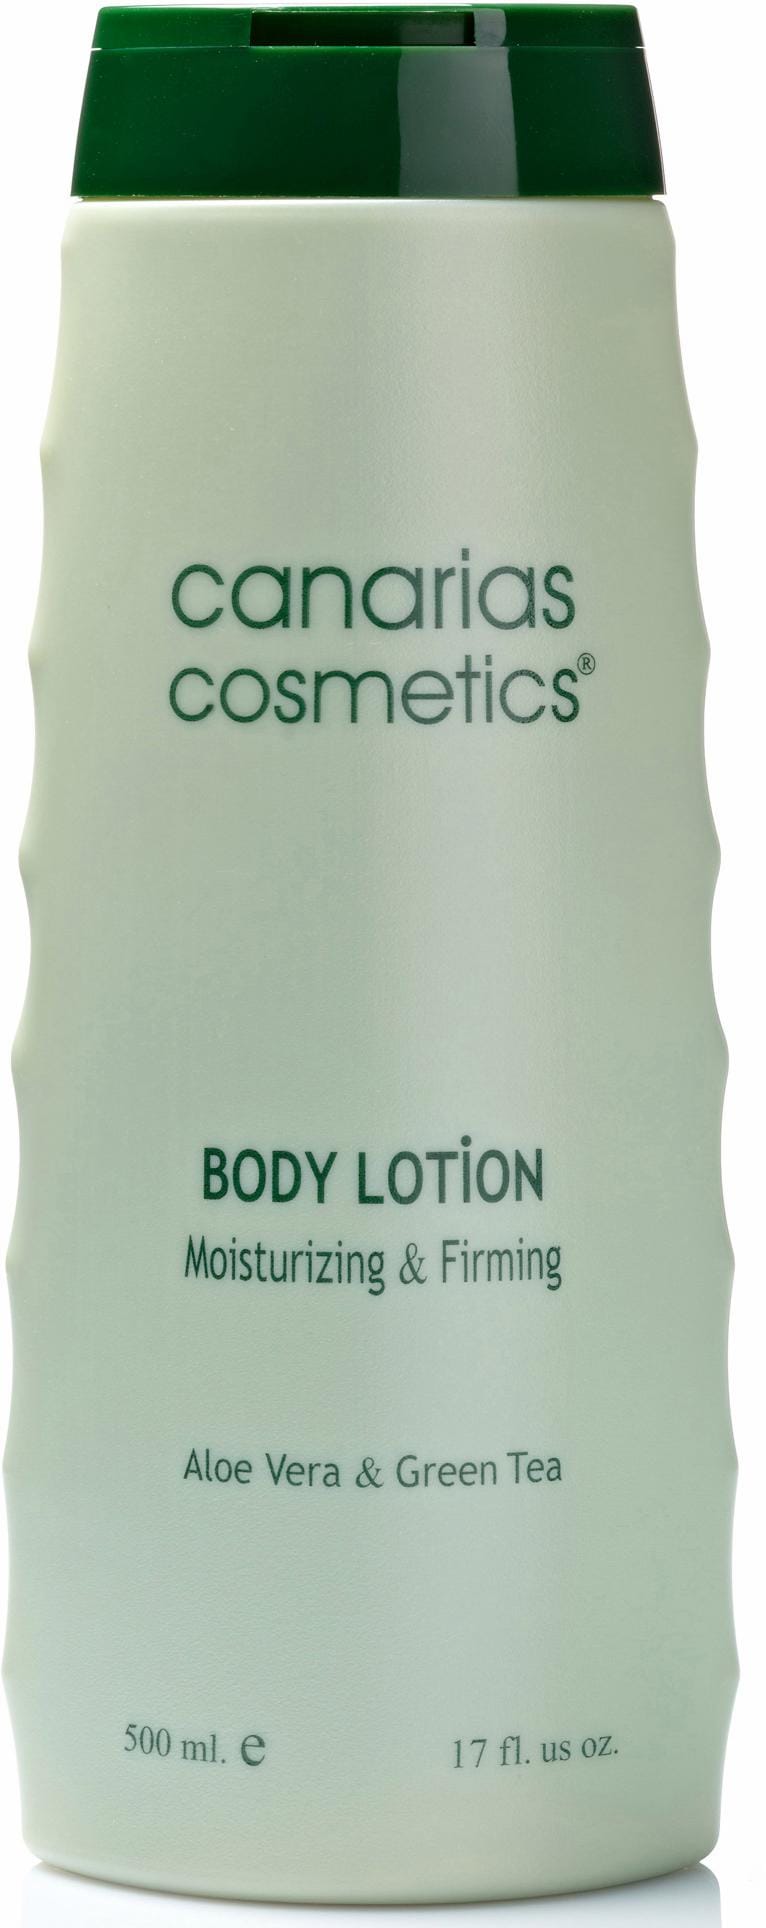 canarias cosmetics und feuchtigkeitsspendend BAUR online Bodylotion, kaufen straffend 